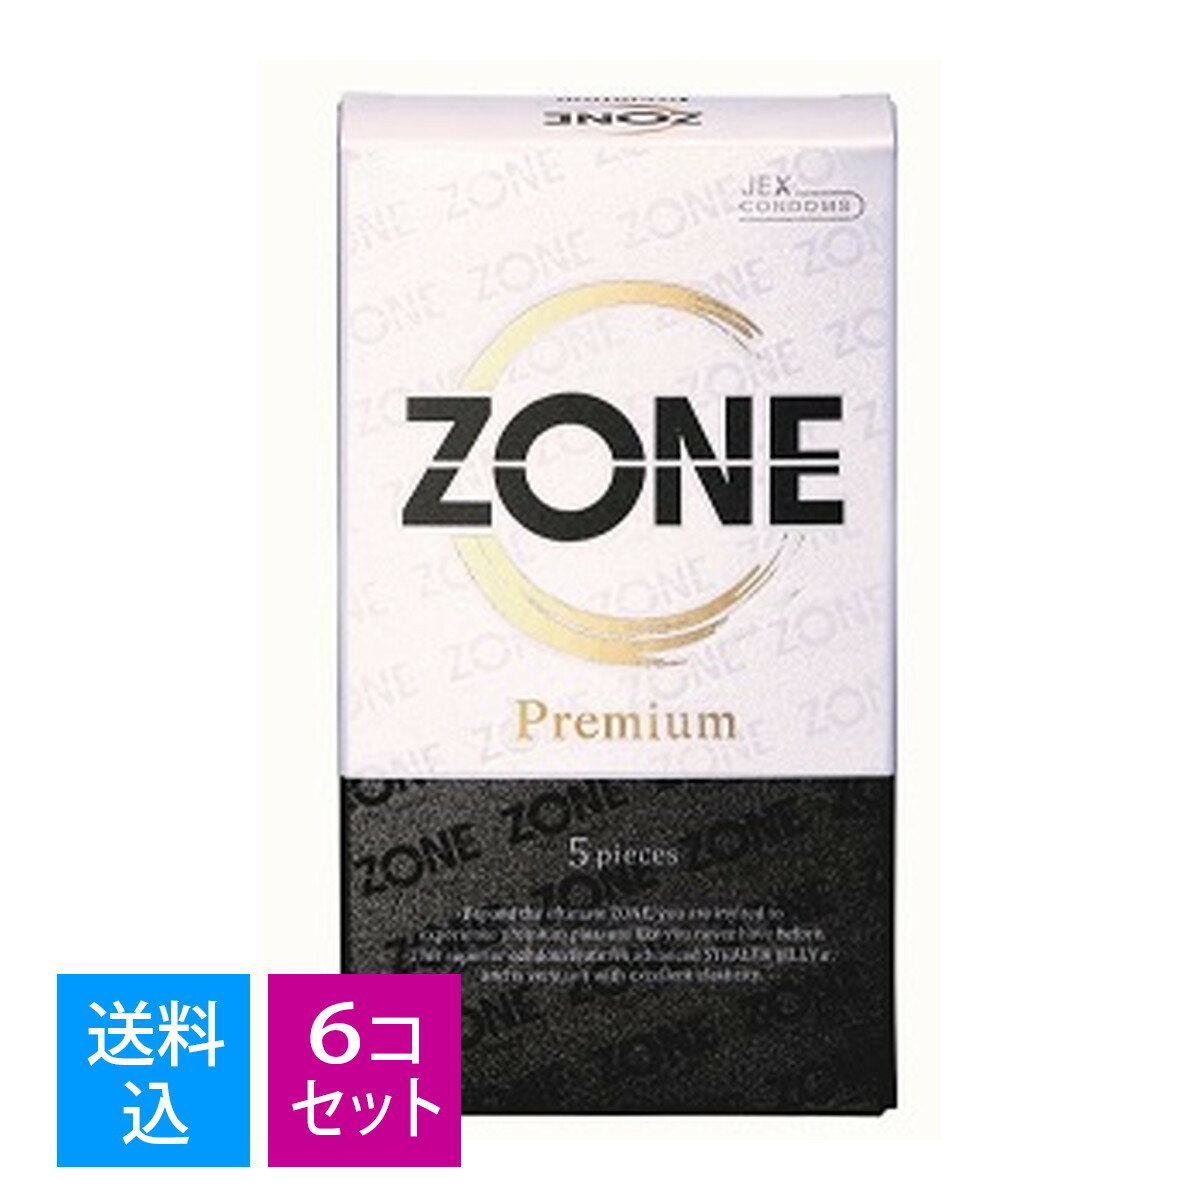 【送料込・まとめ買い5個入×6セット】ジェクス ZONE Premium ゾーンプレミアム 5個入